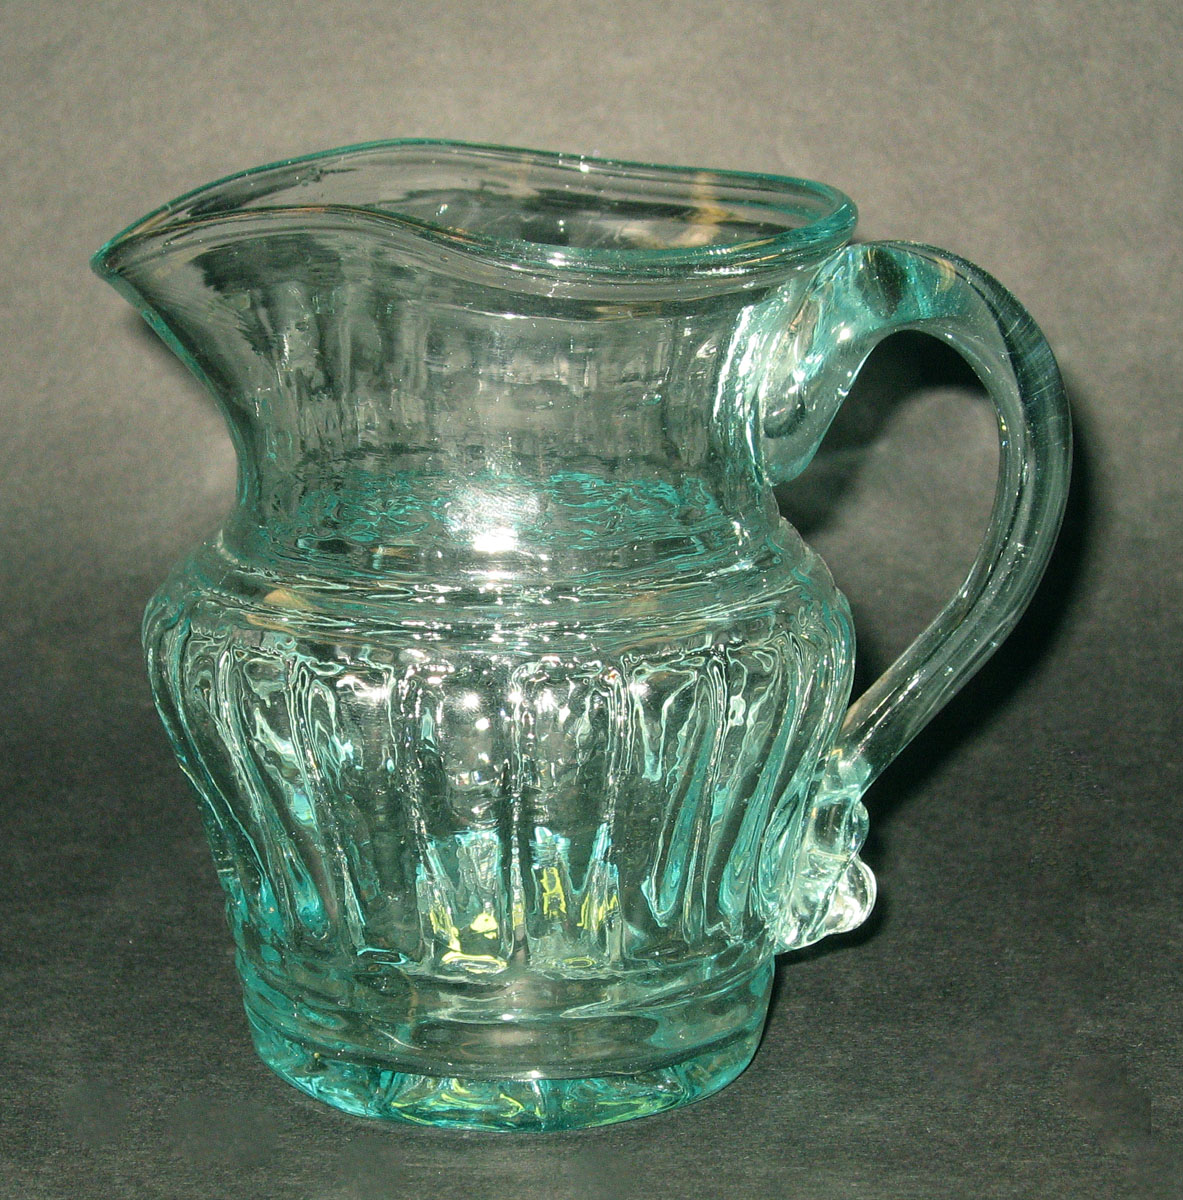 1958.0004.004 Glass jug